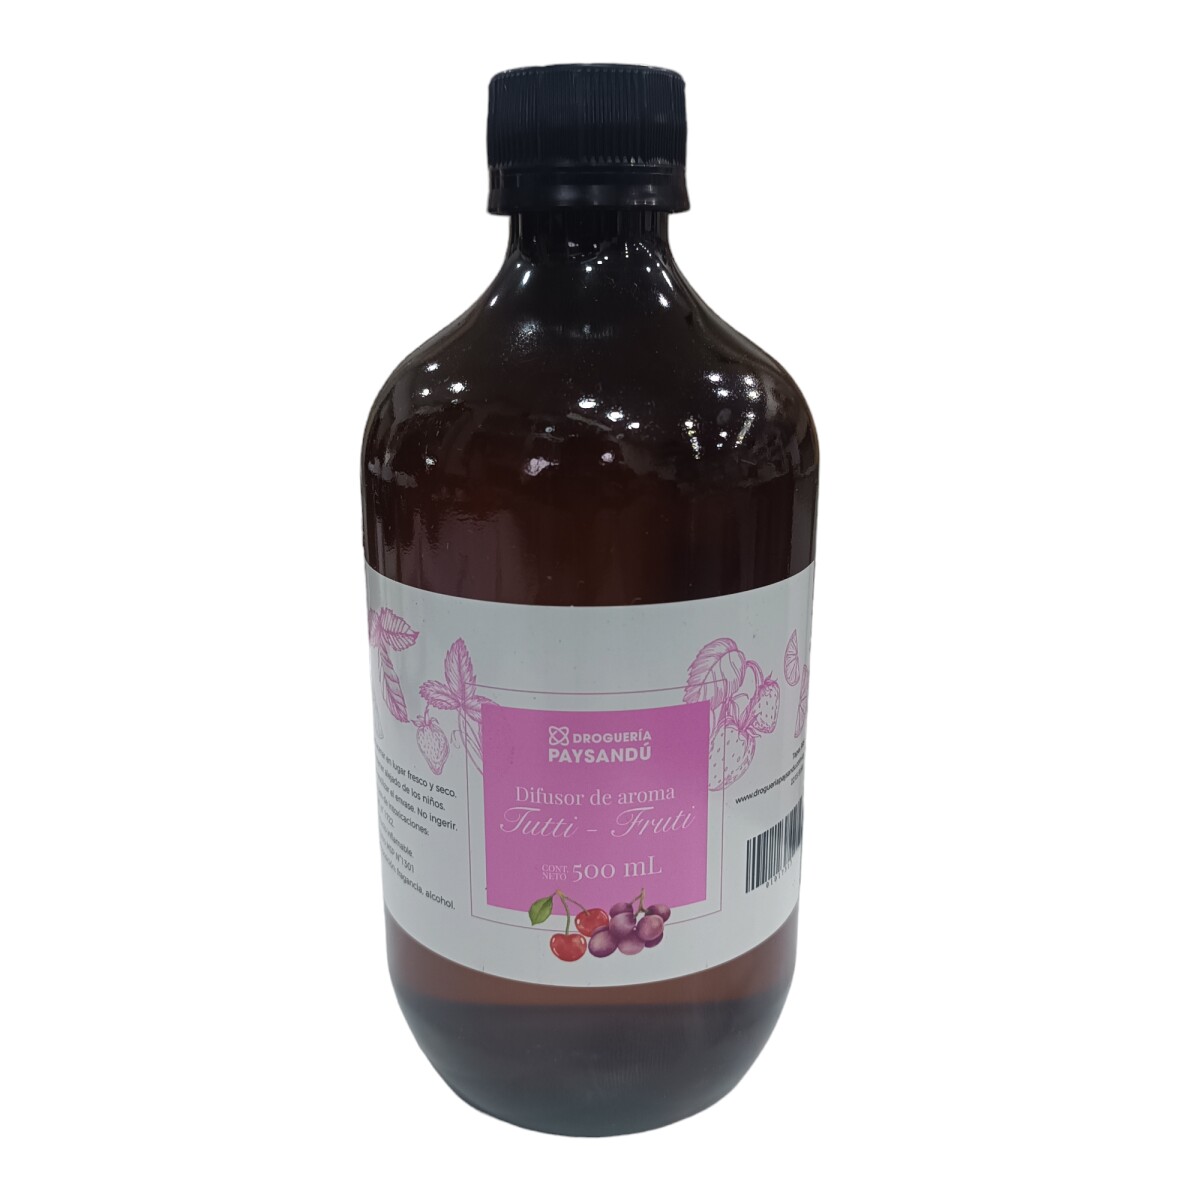 Difusor de Aroma Tutti - Fruti - 500 ml 